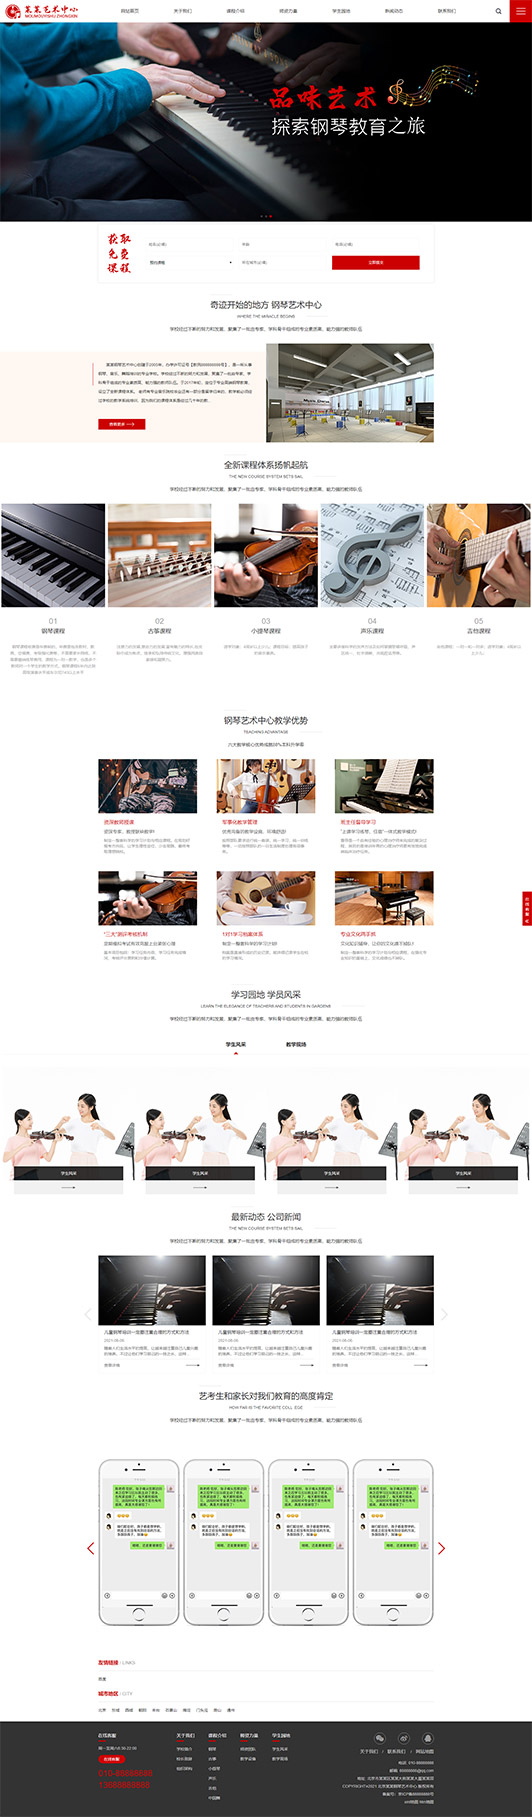 河南钢琴艺术培训公司响应式企业网站